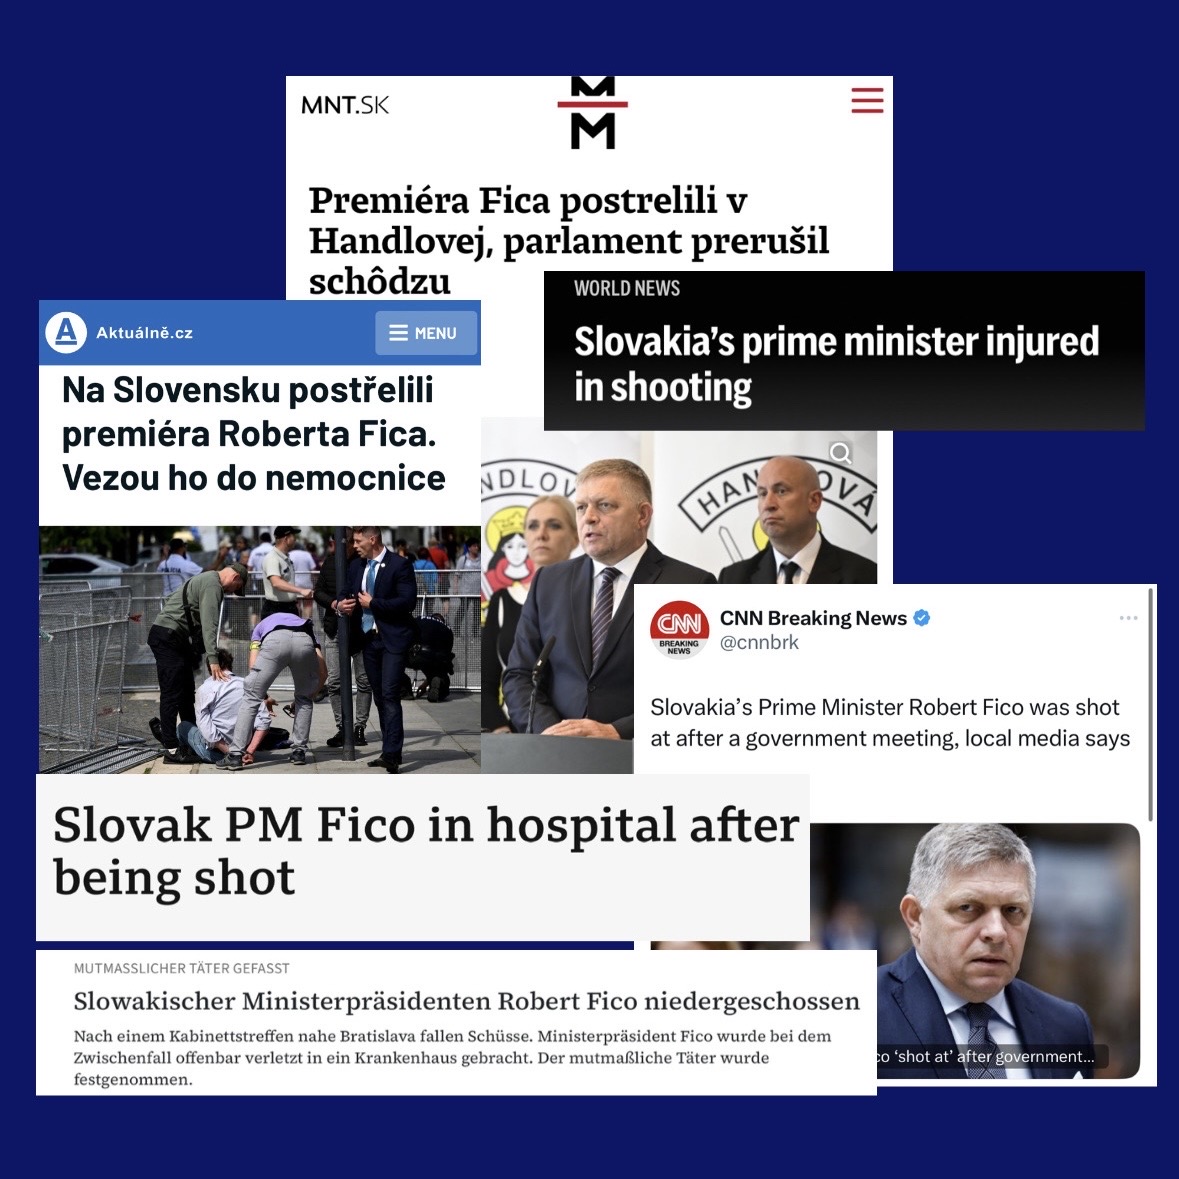 Zprávy o střelbě na slovenského premiéra Roberta Fica zaplnily titulky v médiích po celém světě. Ficův koaliční partner a předseda Slovenské národní strany Andrej Danko dal postřelení premiéra za vinu novinářům.